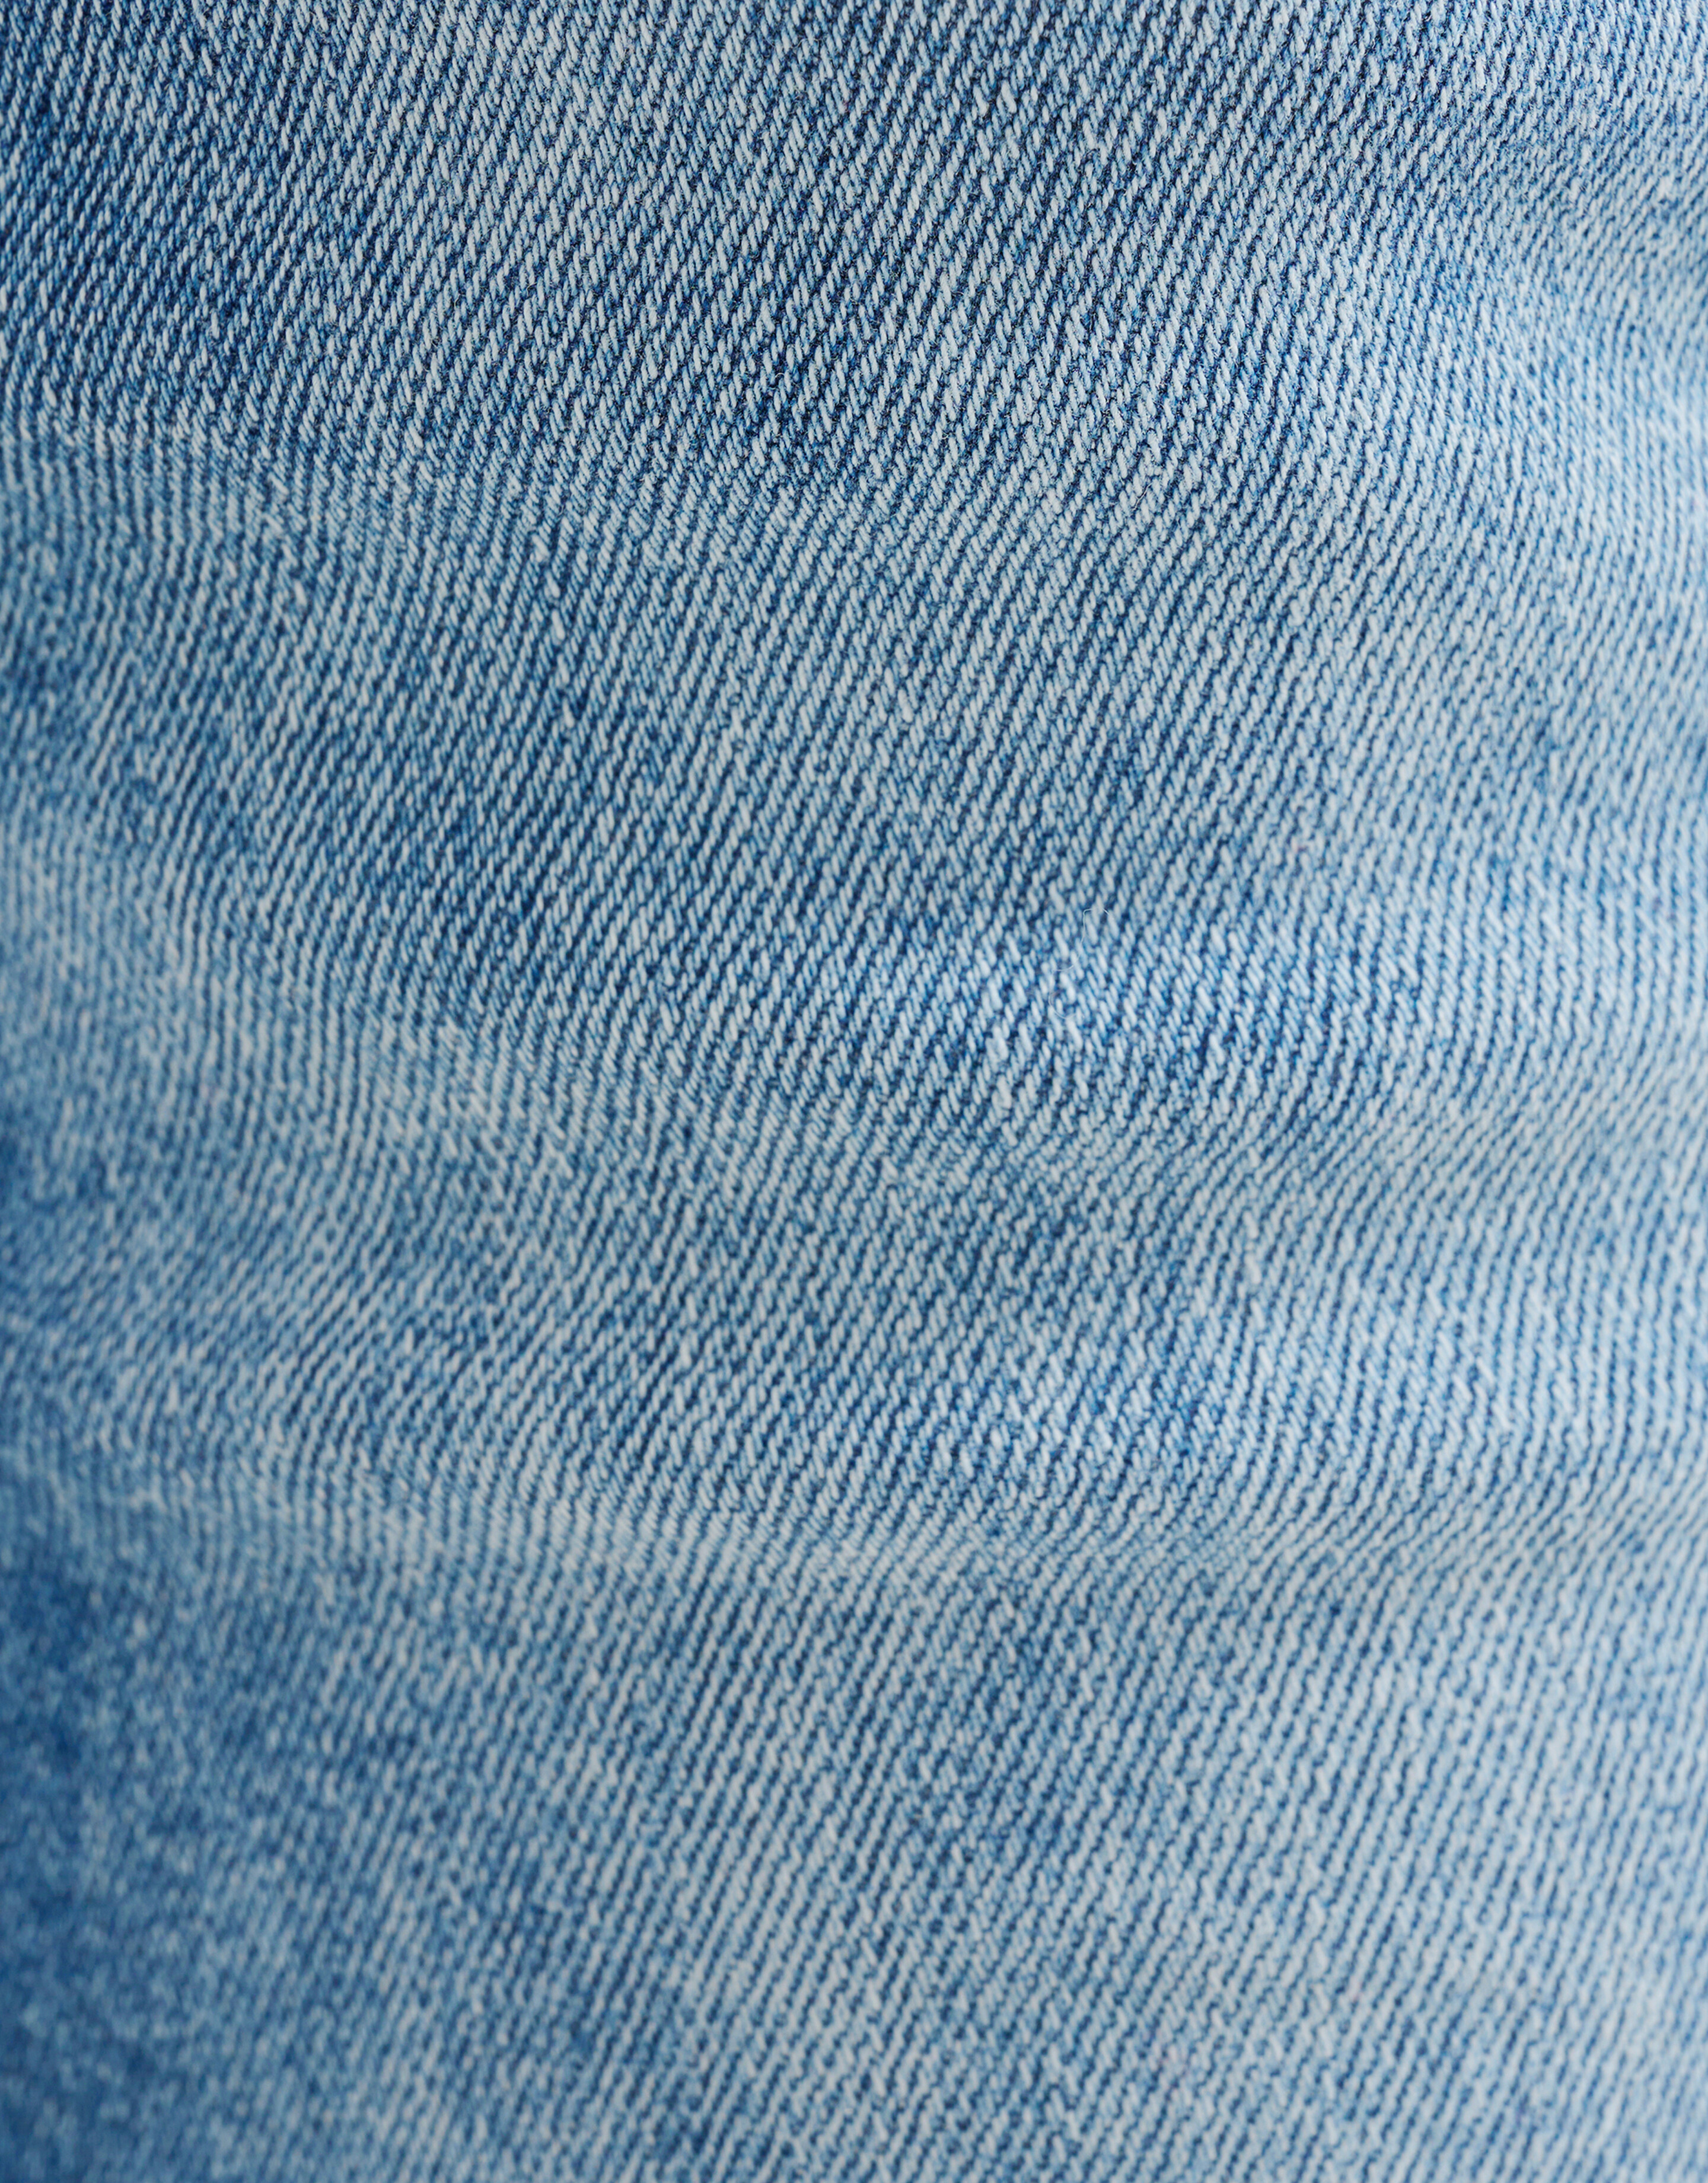 Skinny Jeans Blau Länge 34 Refill